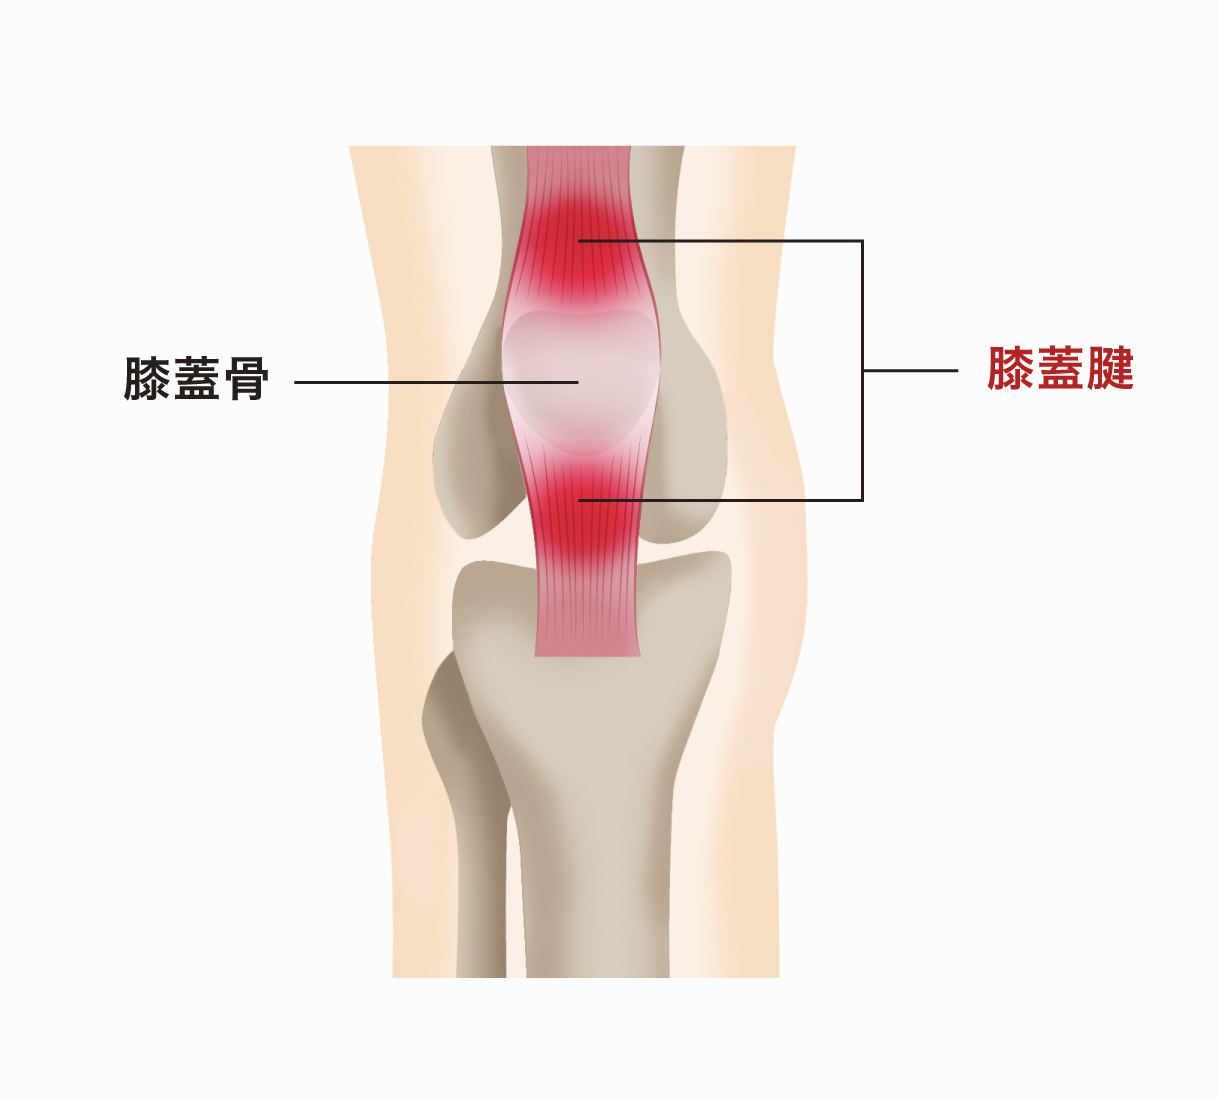 膝 を つく と 激痛